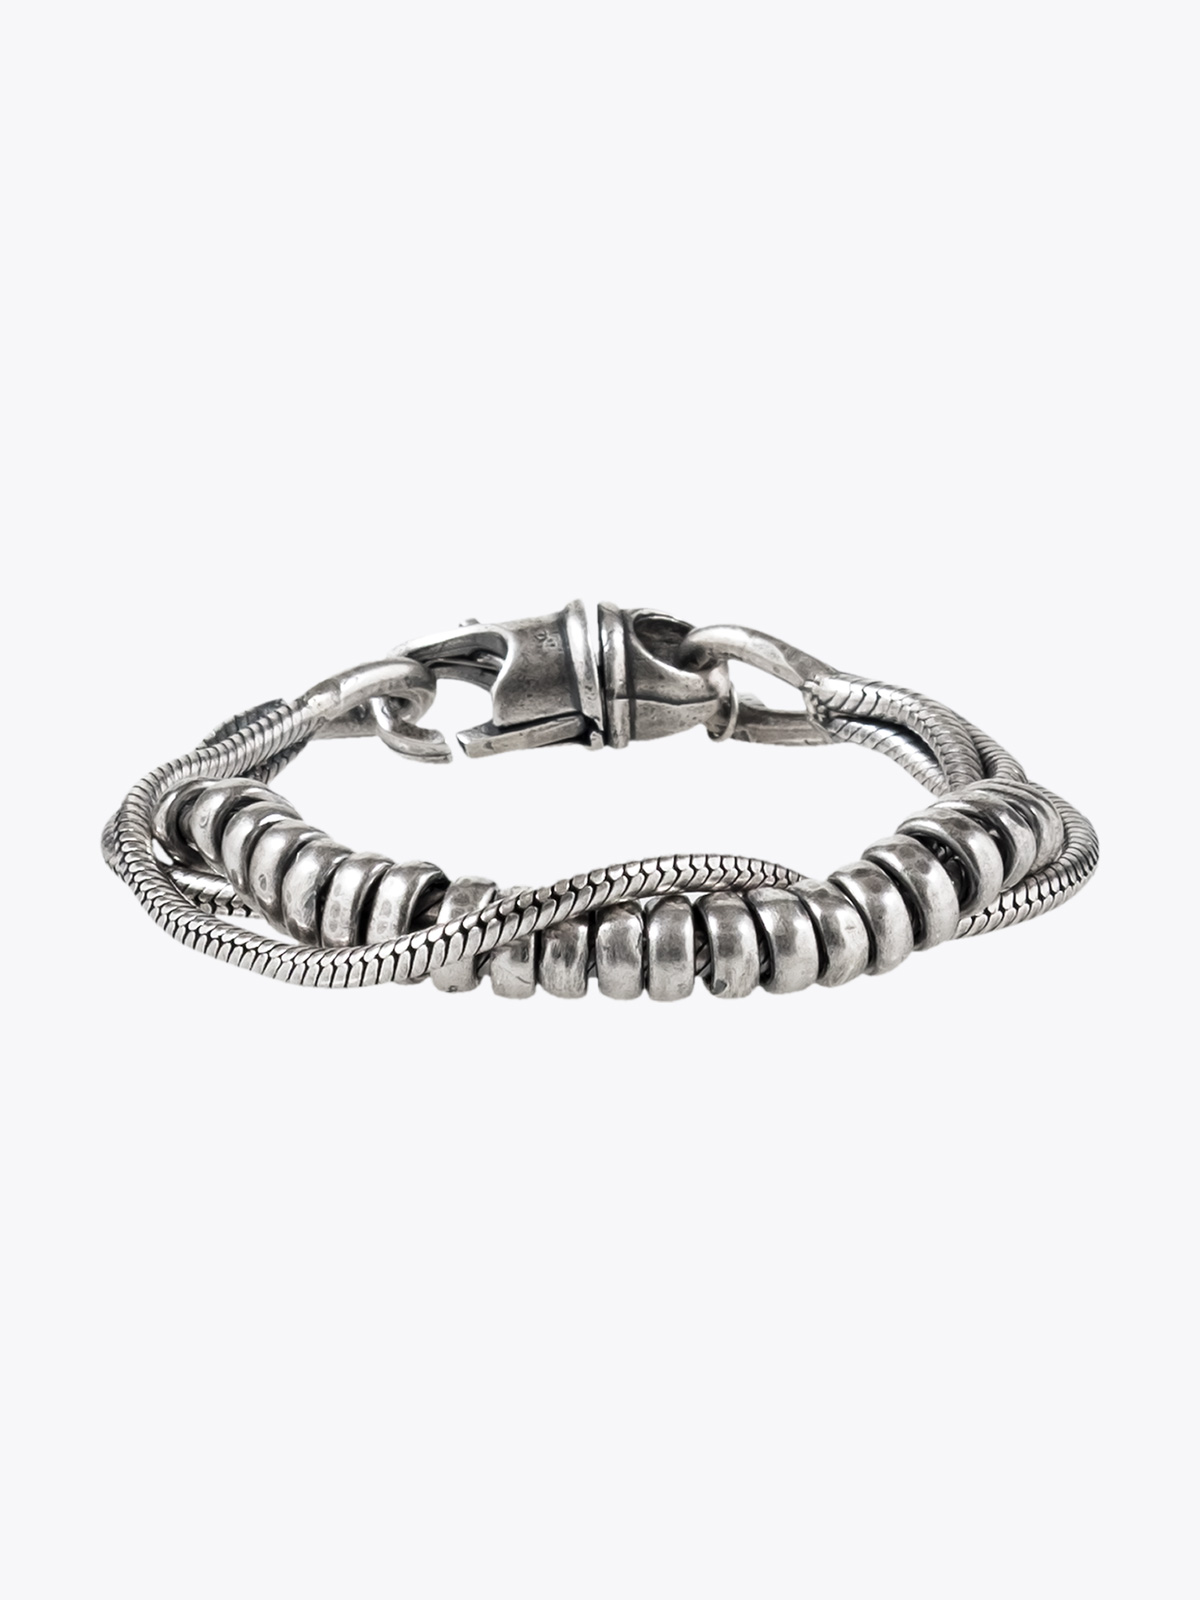 Goti Bracelet Silver Triple Snake Chain - BR1271 - E35 Shop